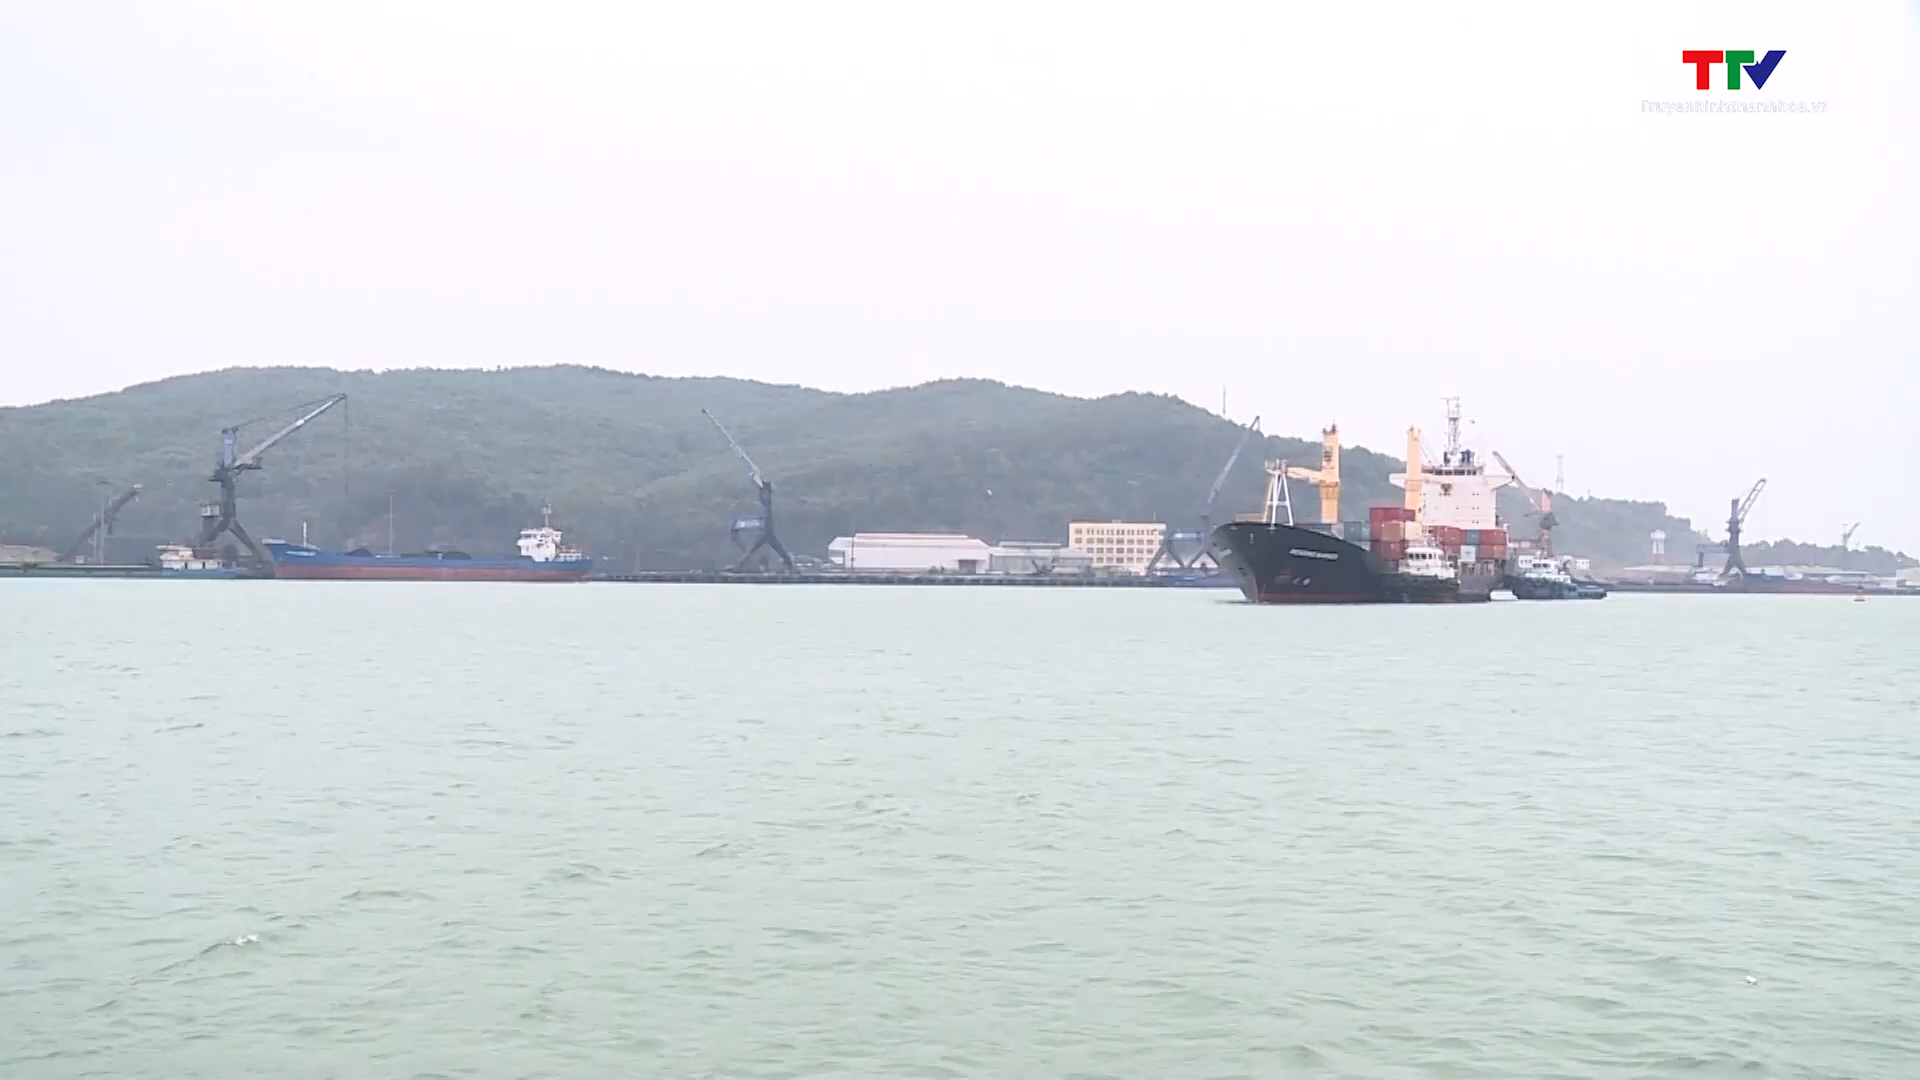 Hỗ trợ doanh nghiệp vận chuyển hàng hóa bằng Container qua cảng Nghi Sơn - Ảnh 1.